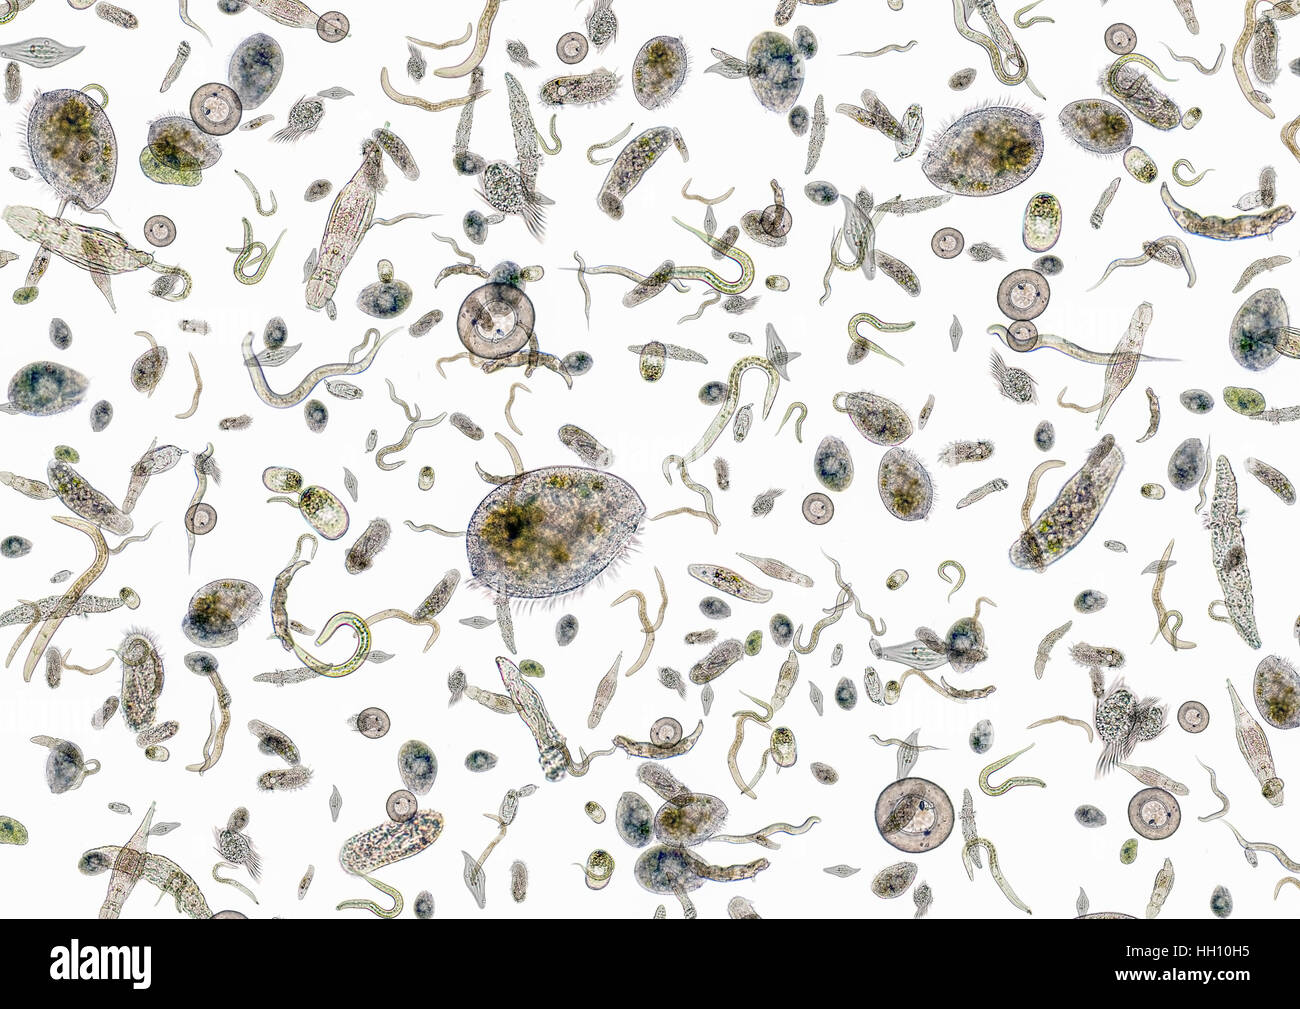 La micrografia mostra un sacco di vari microrganismi di acqua dolce in luce posteriore Foto Stock